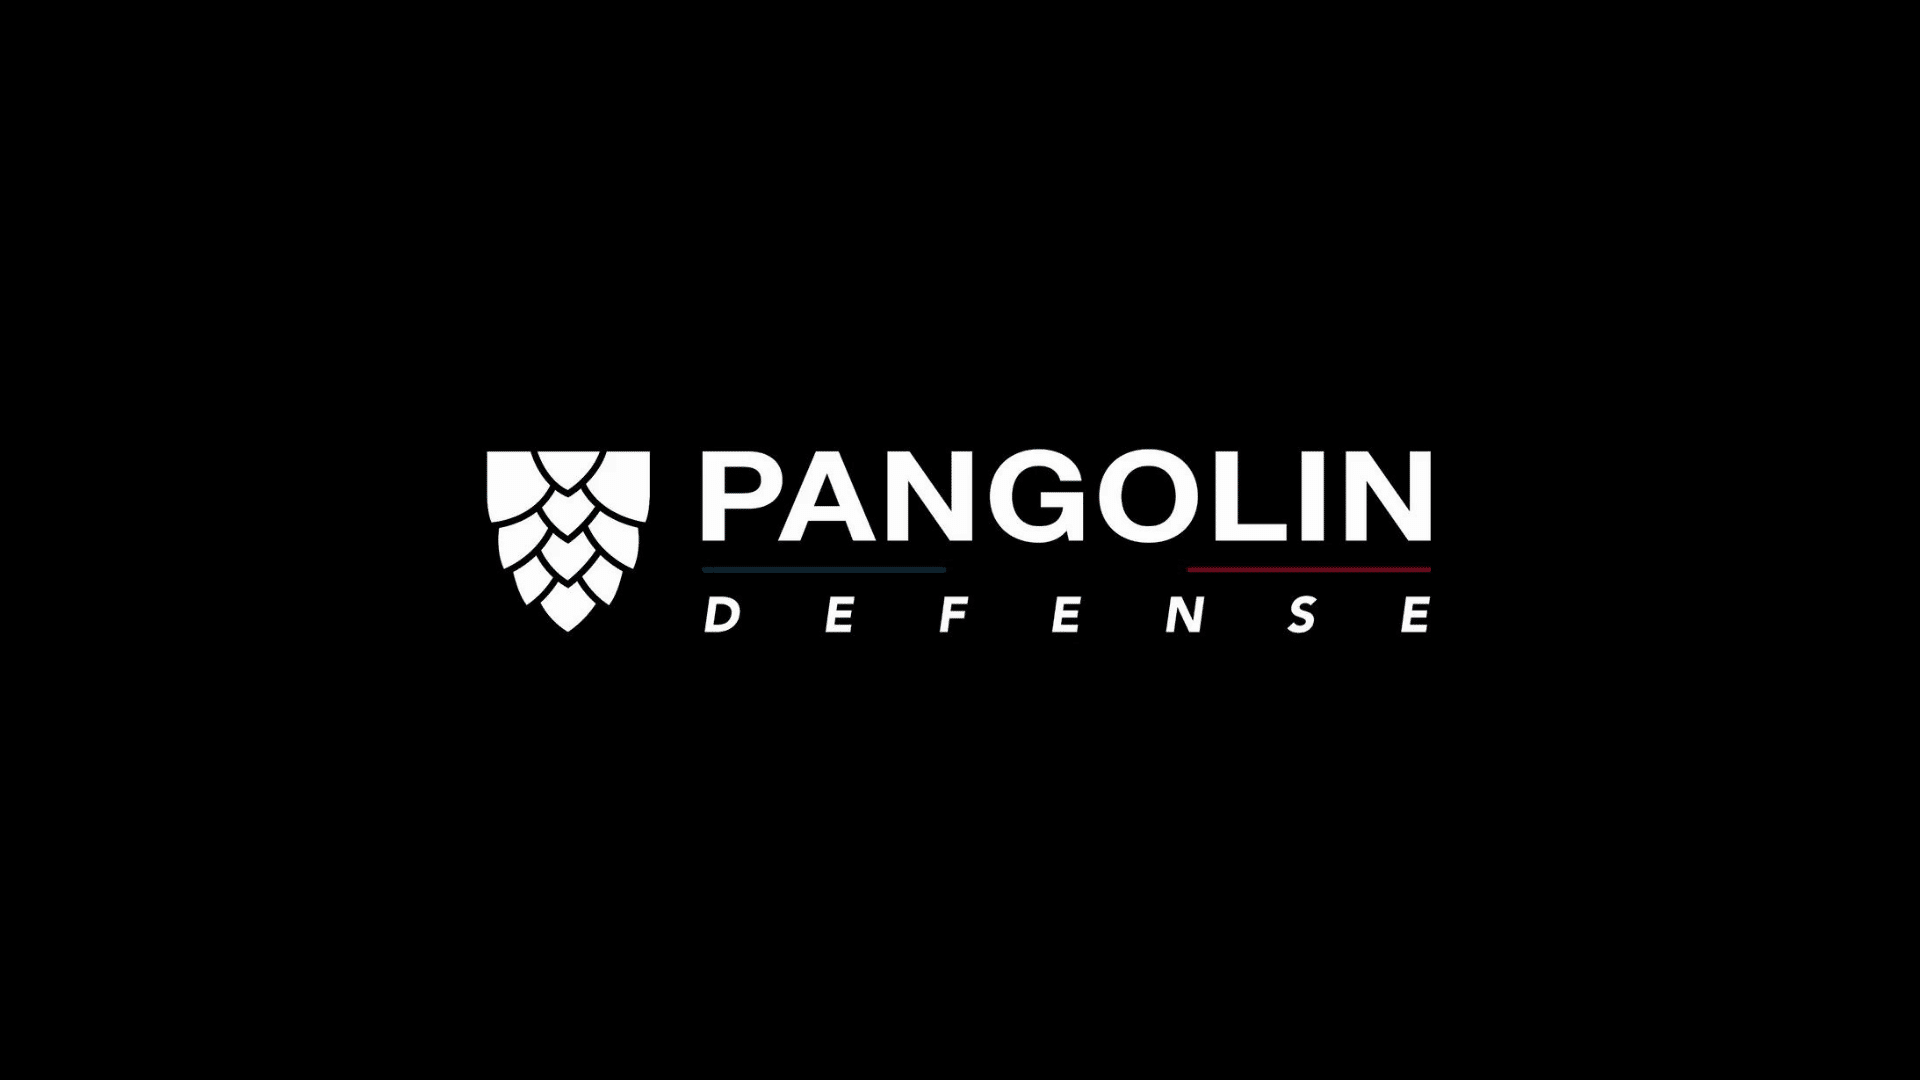 Pangolin Défense : renouveler le gilet pare-balles